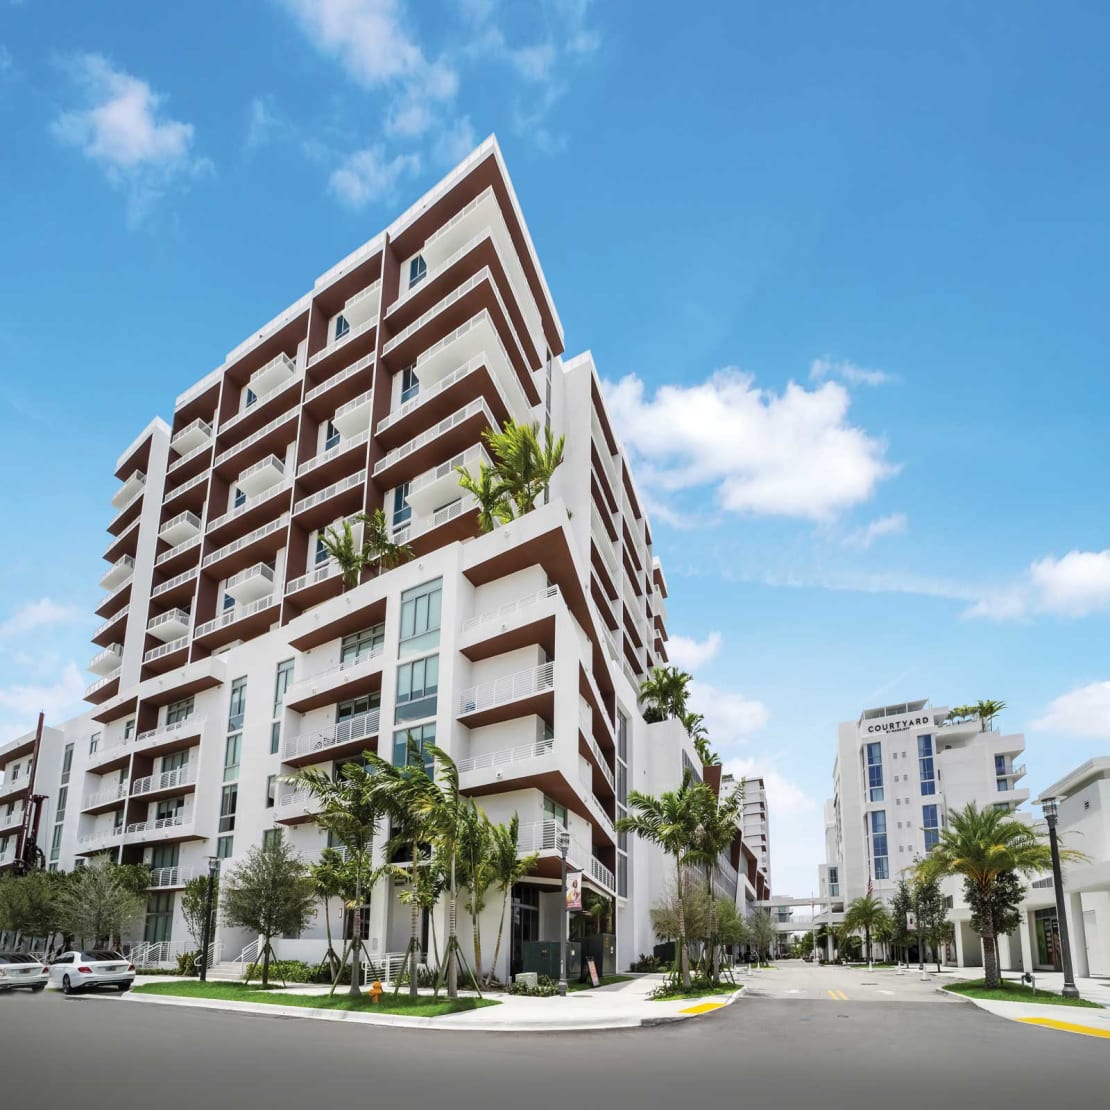 Exterior View of Quantum Apartments in Ft. Lauderdale, FL